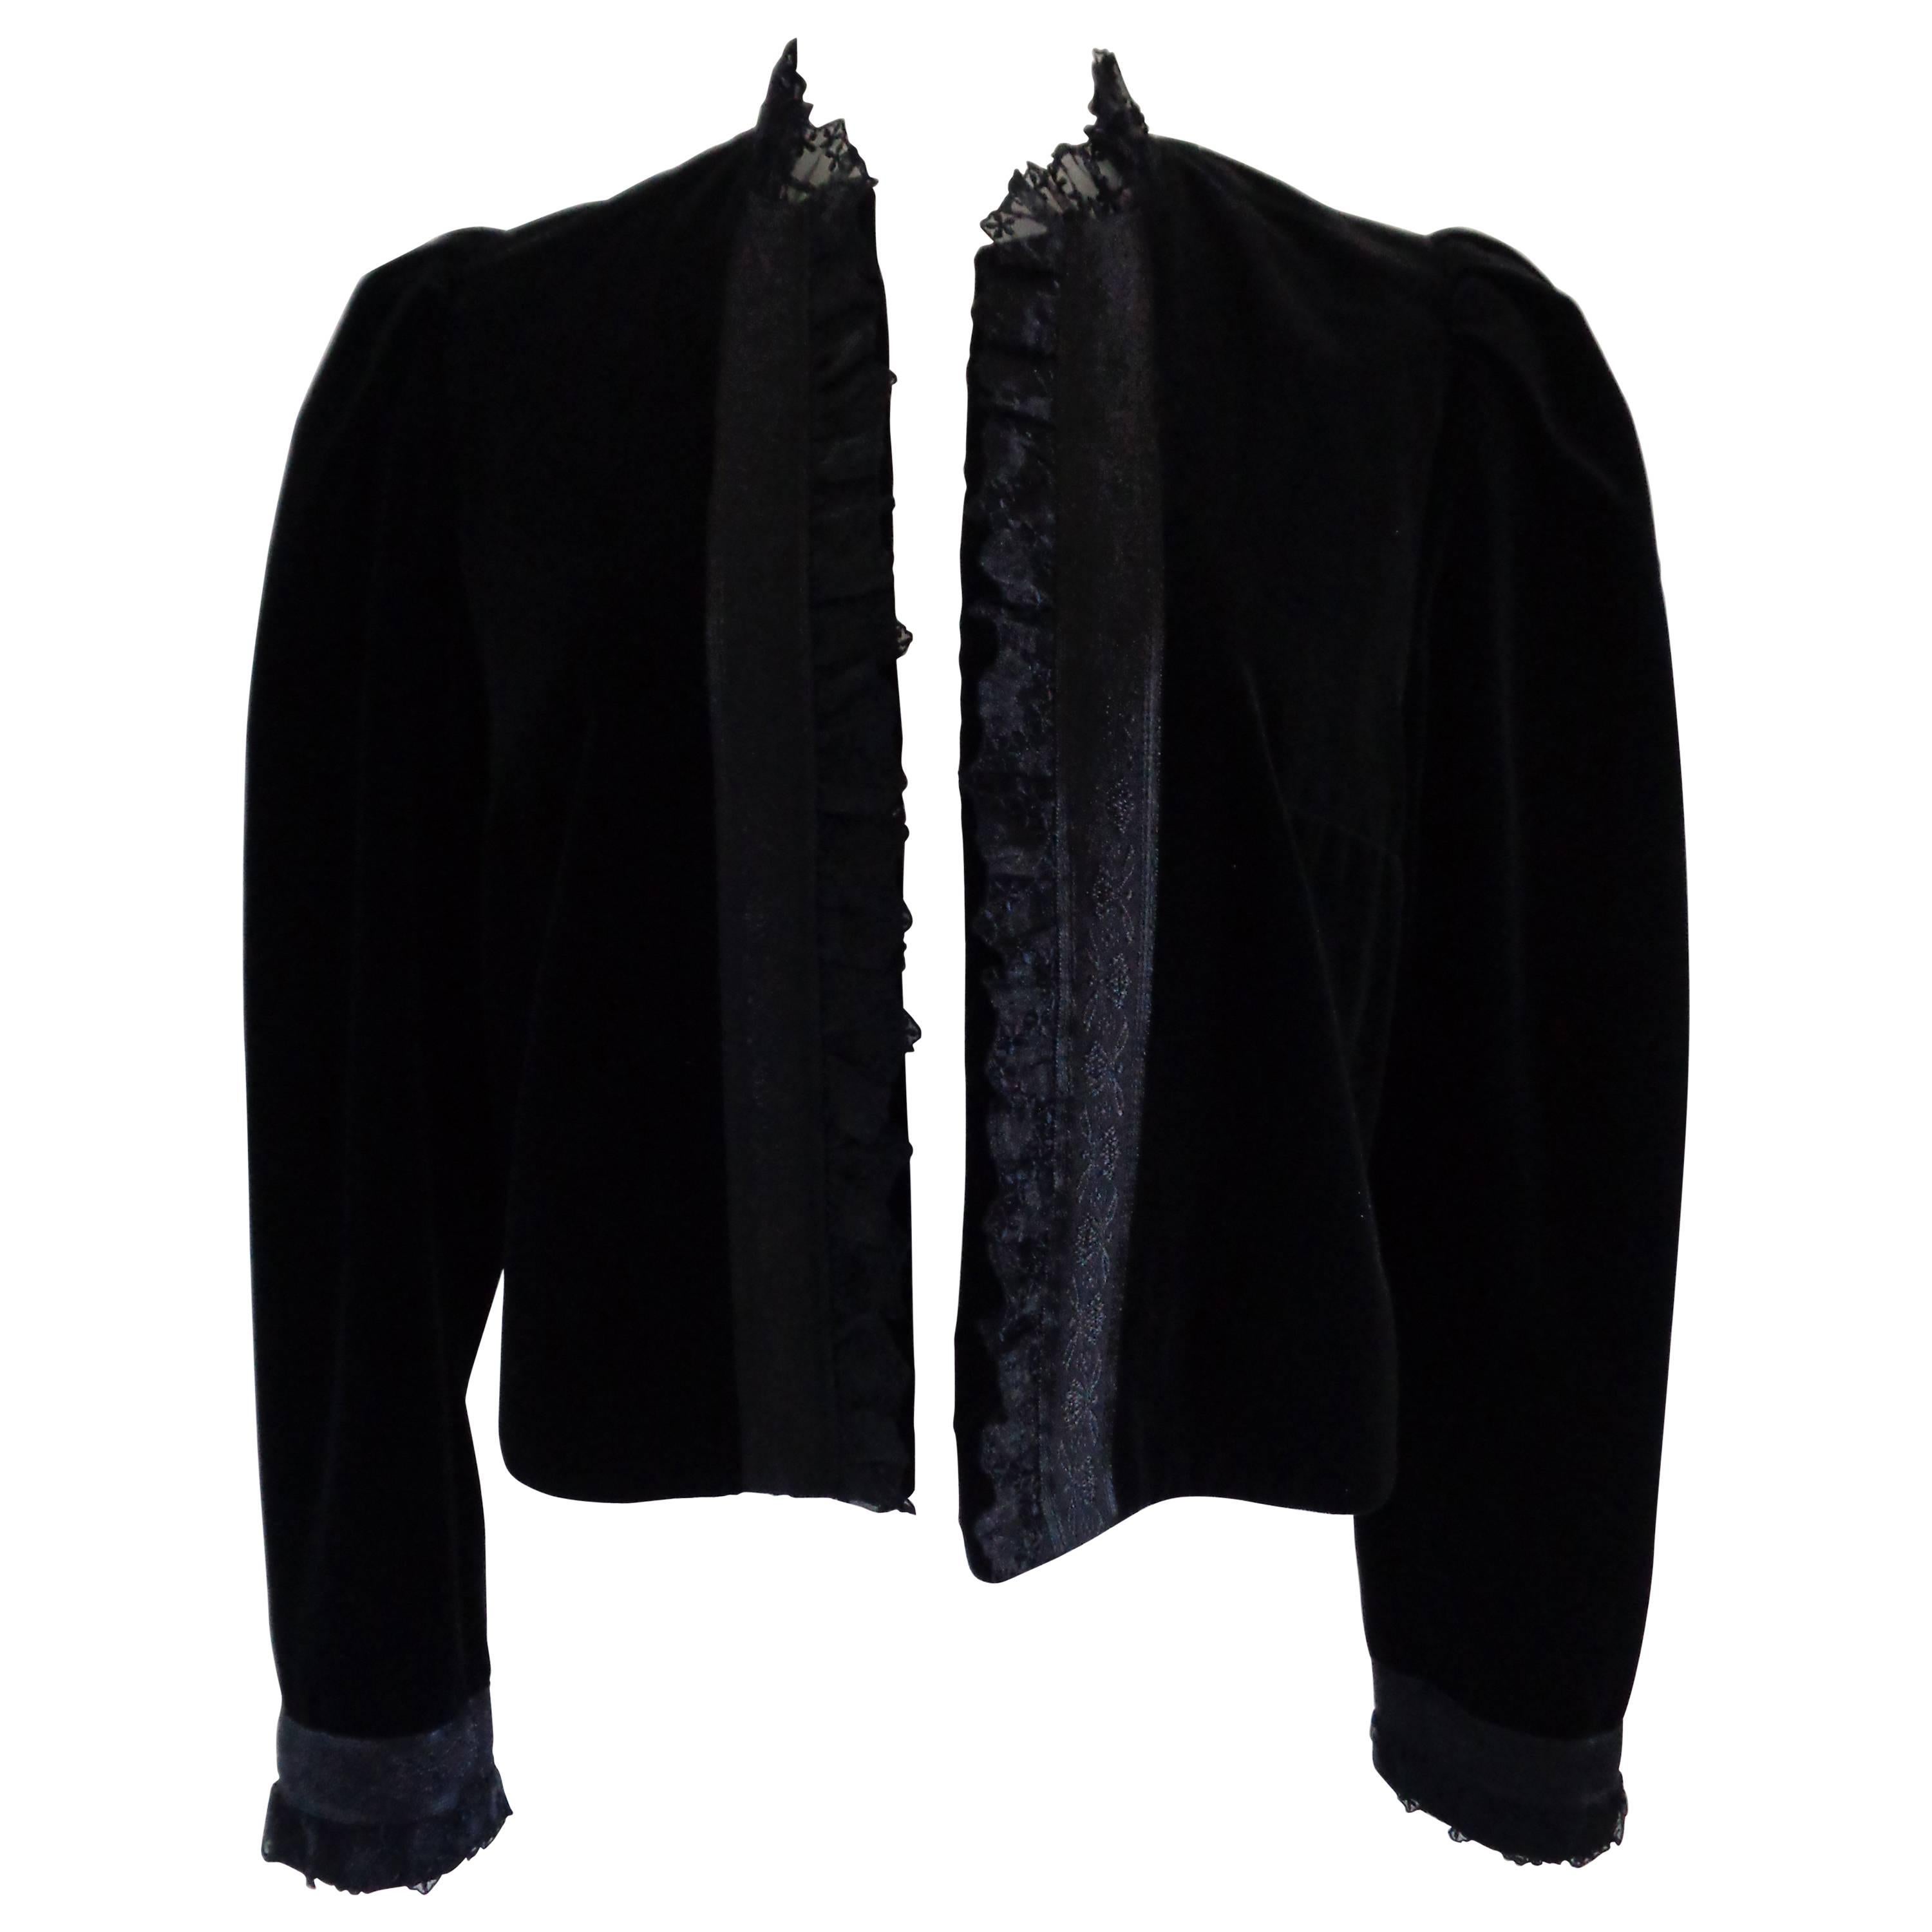 Krachten Kraft Collection Black Jacket For Sale